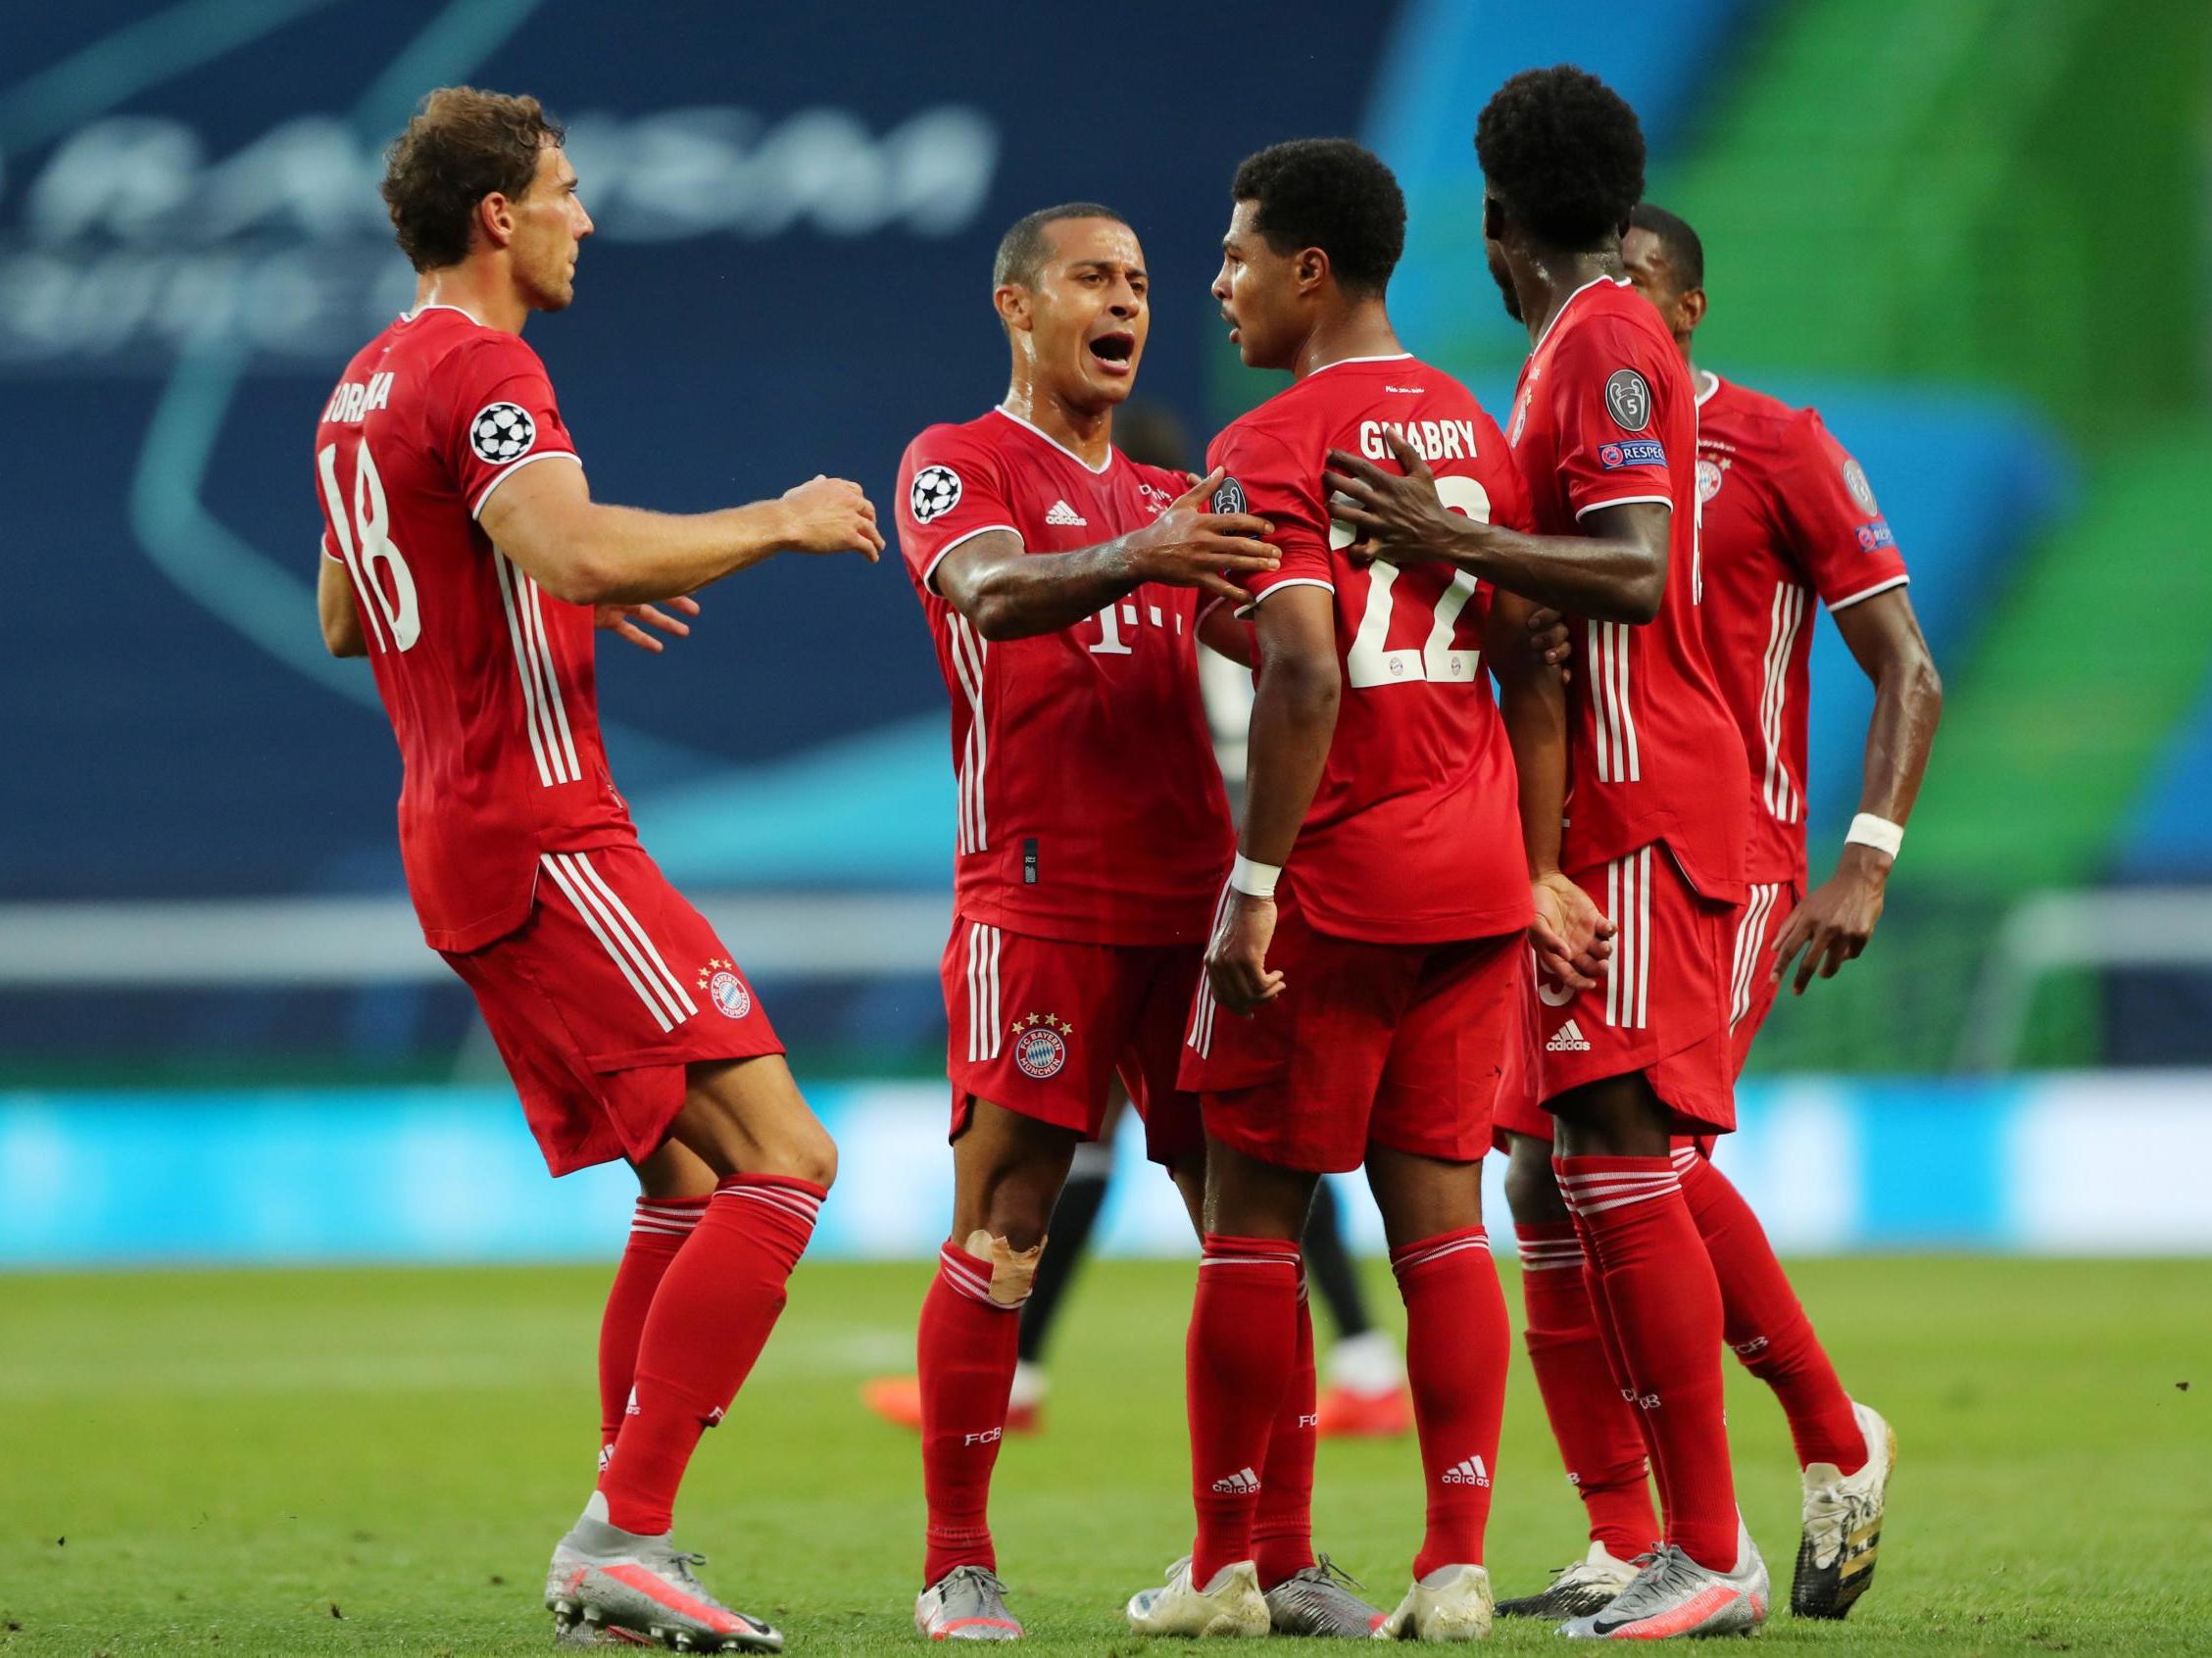 Bayern Munich's Serge Gnabry celebrates scoring